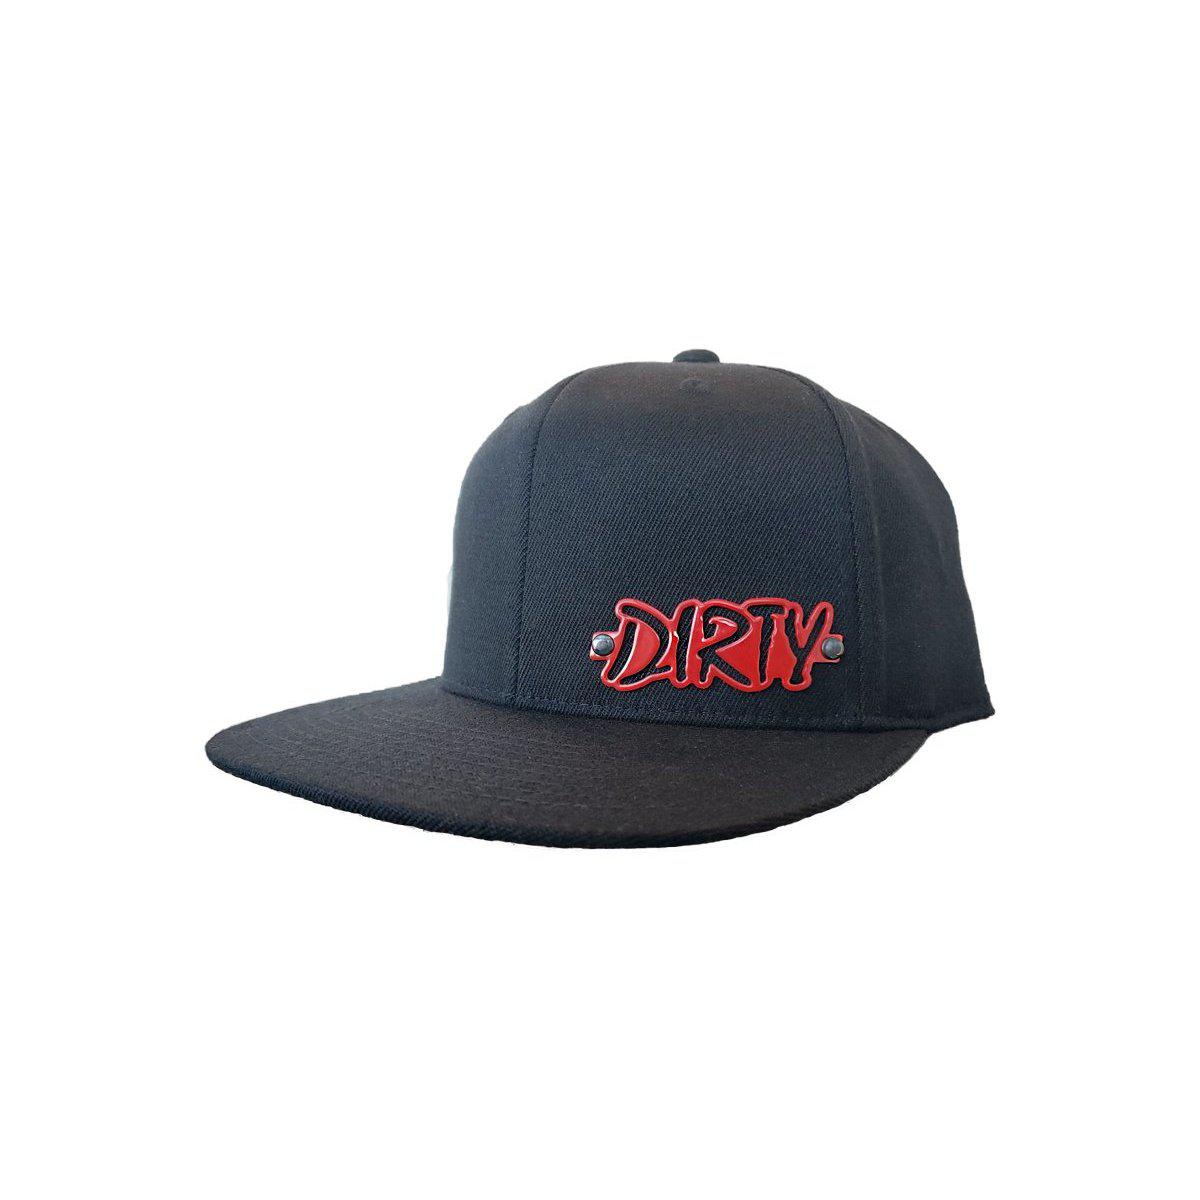 Dirty Diesel Trigger Hat-Hat-Dirty Diesel Customs-Dirty Diesel Customs